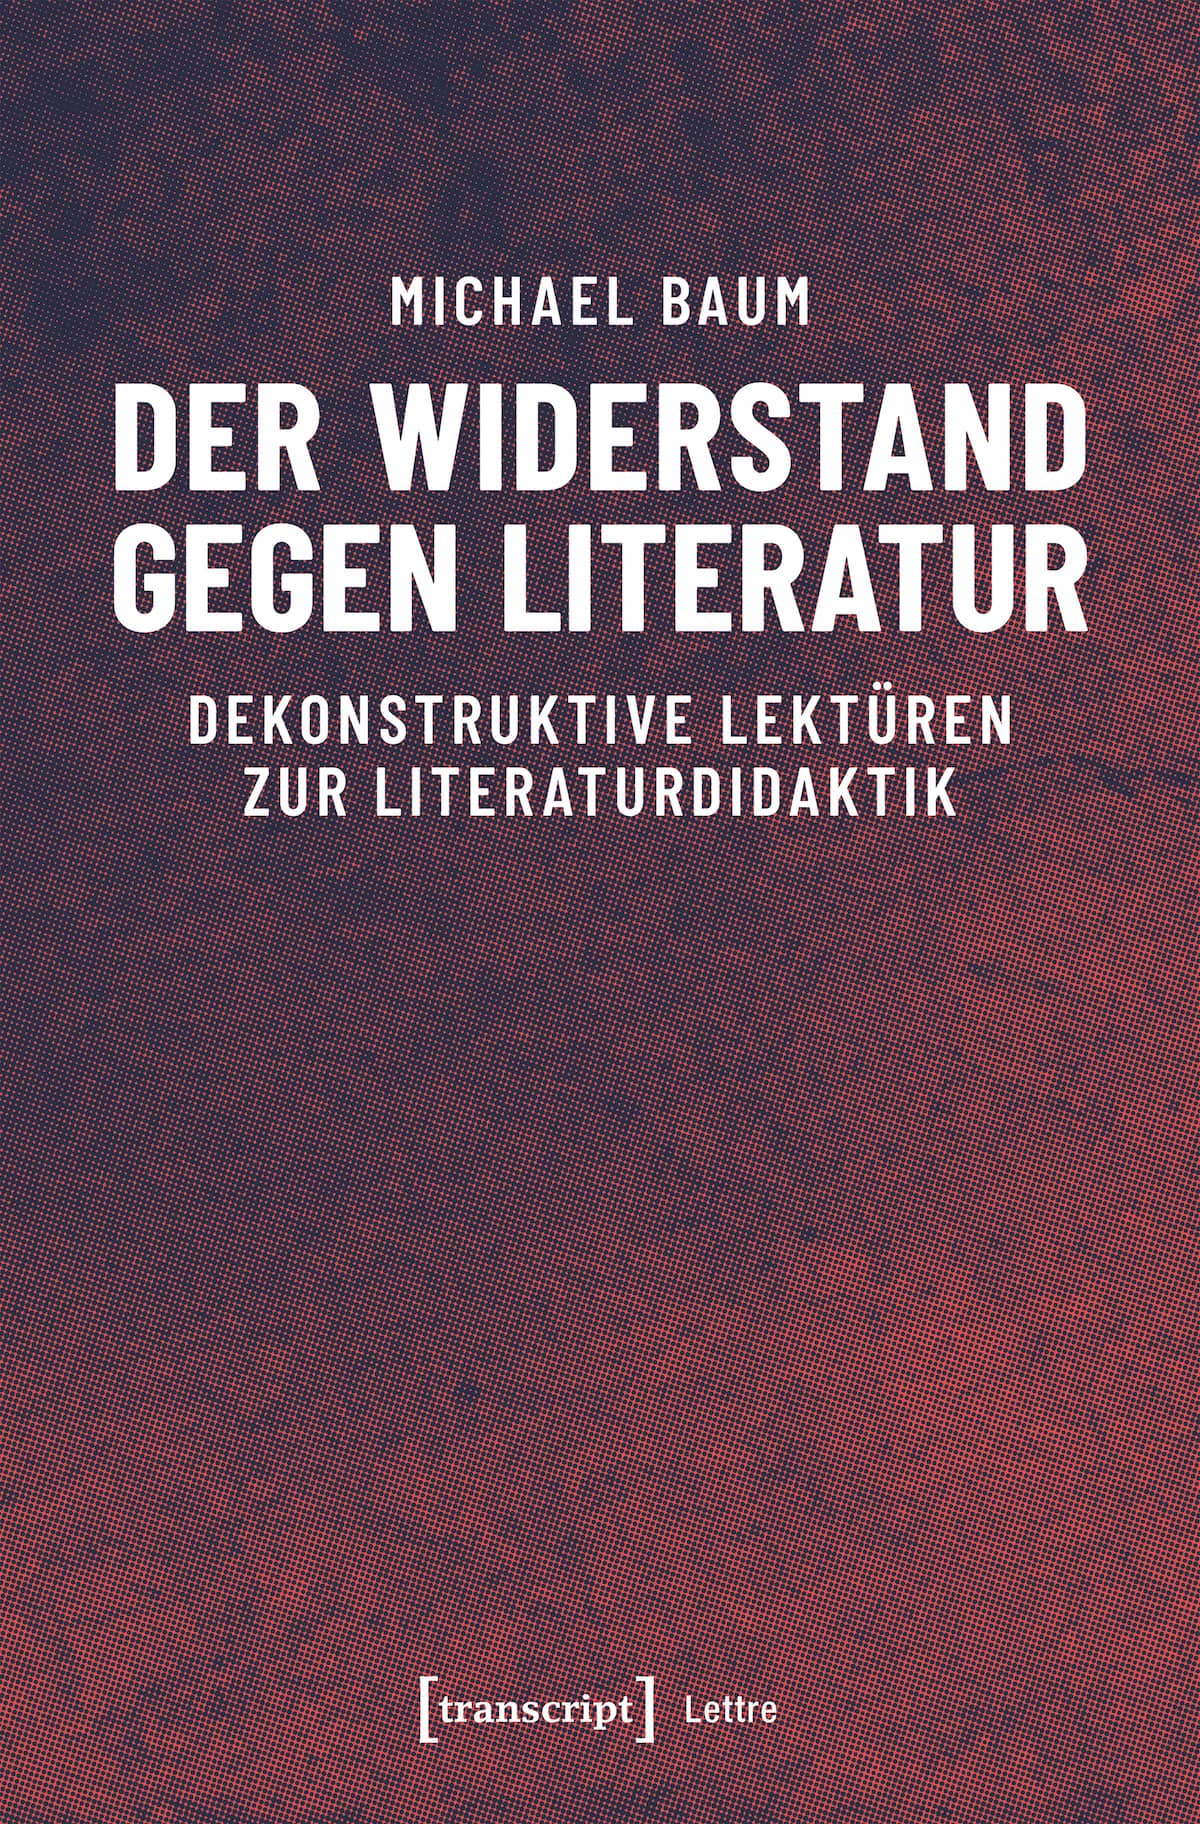 Baum, Michael: Der Widerstand gegen Literatur. Dekonstruktive Lektüren zur Literaturdidaktik